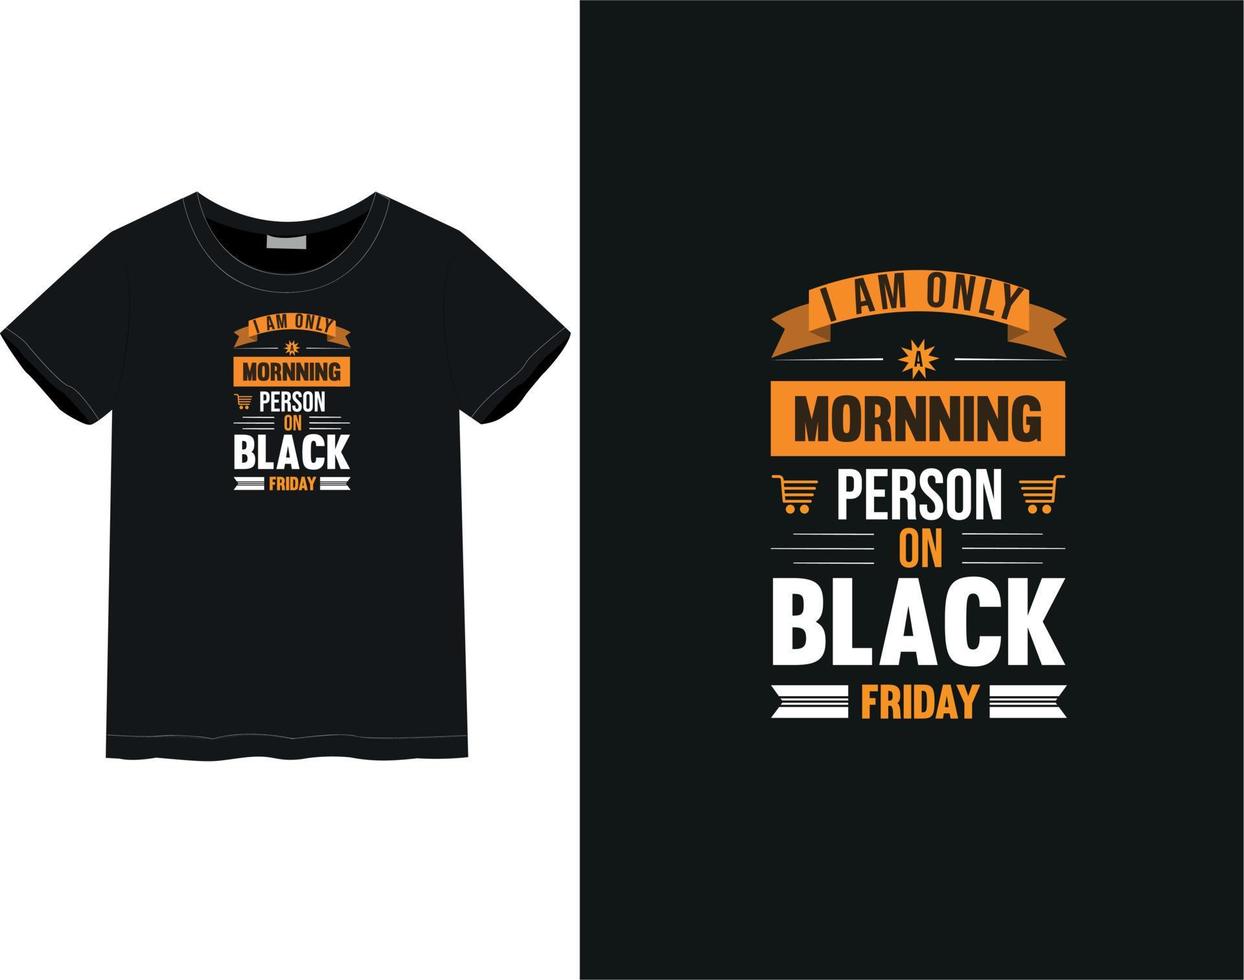 Black Friday t-shirt vector